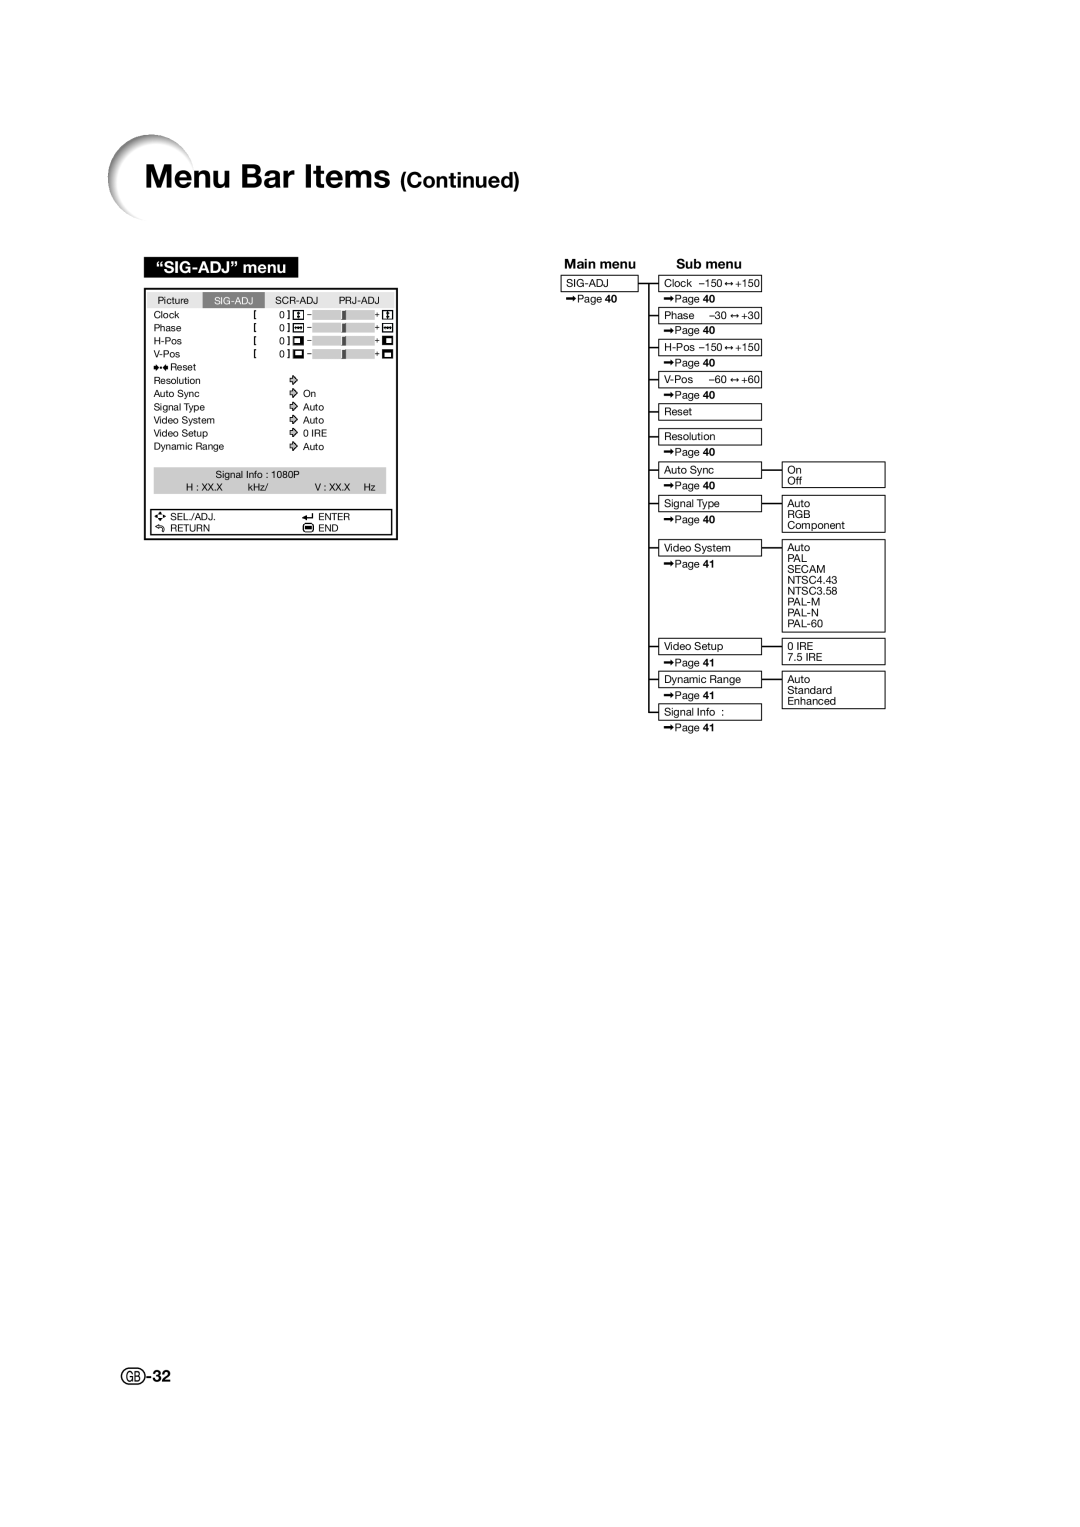 Sharp XV-Z15000 operation manual Menu Bar Items Continued, “SIG-ADJ” menu, Main menu, Sub menu 